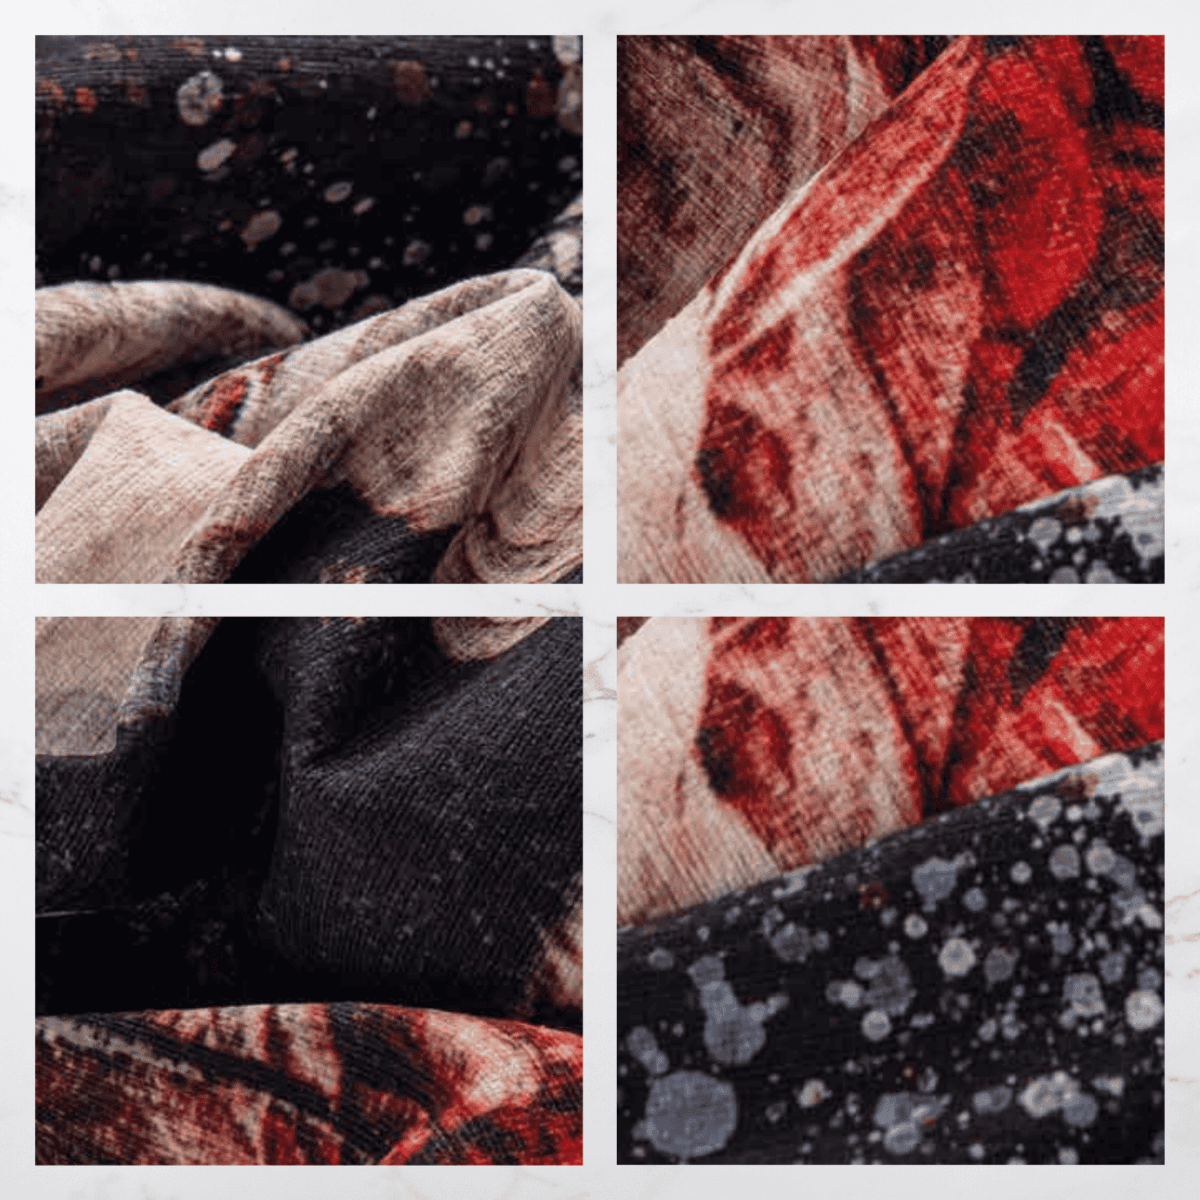 flaubert-tappeto-arredo-emozioni-artista-bouquet-multicolor-fiorato-scuro-esplosivo-dettagli